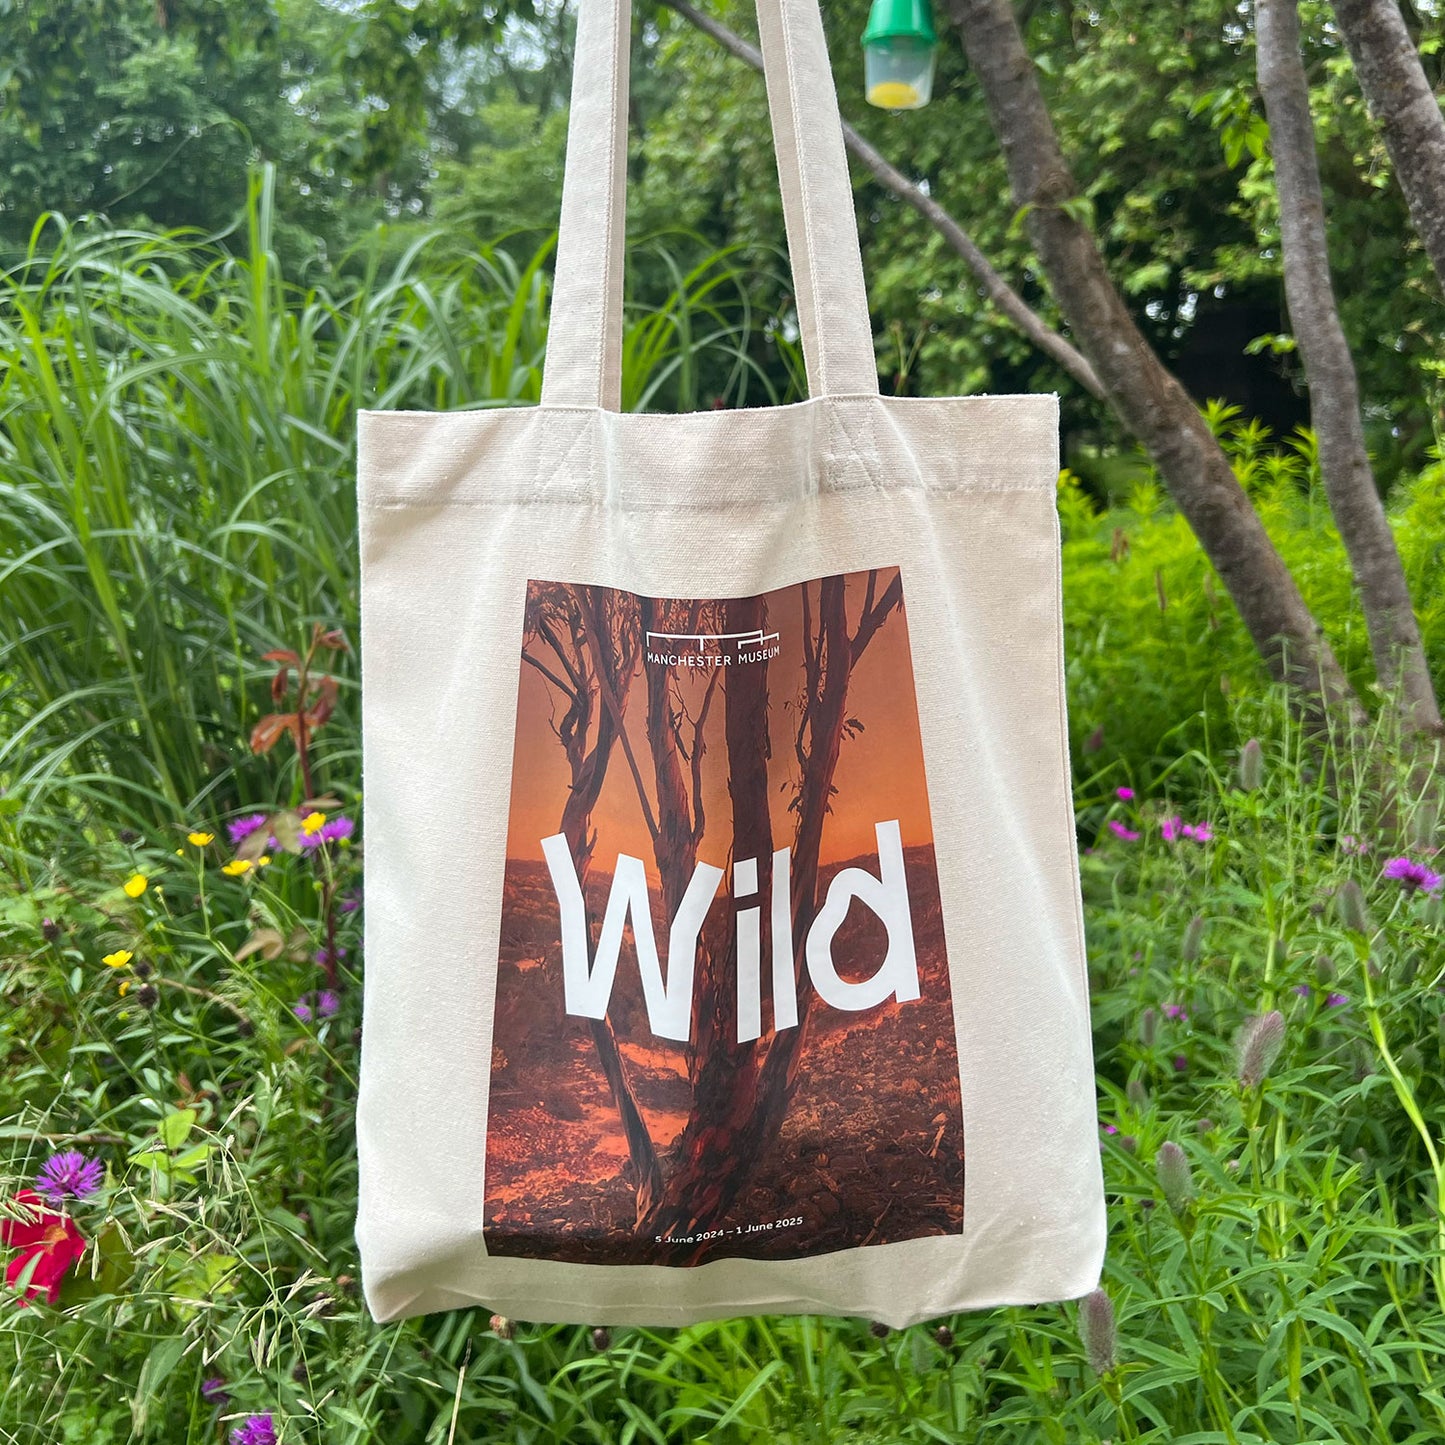 Wild Exhibition Tote Bag